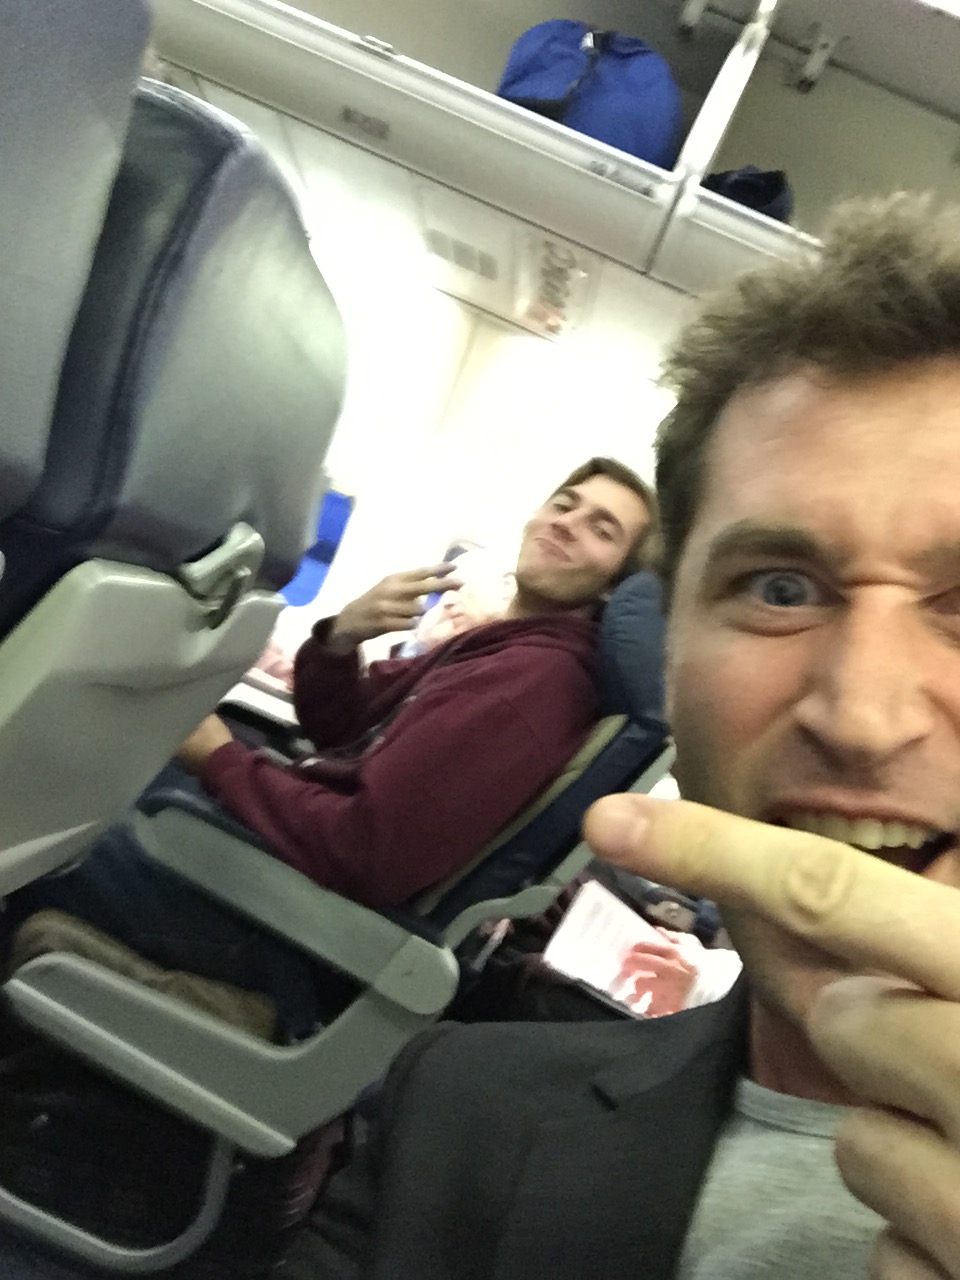 Dick Pics On A Plane!!!! - James Deen Blog